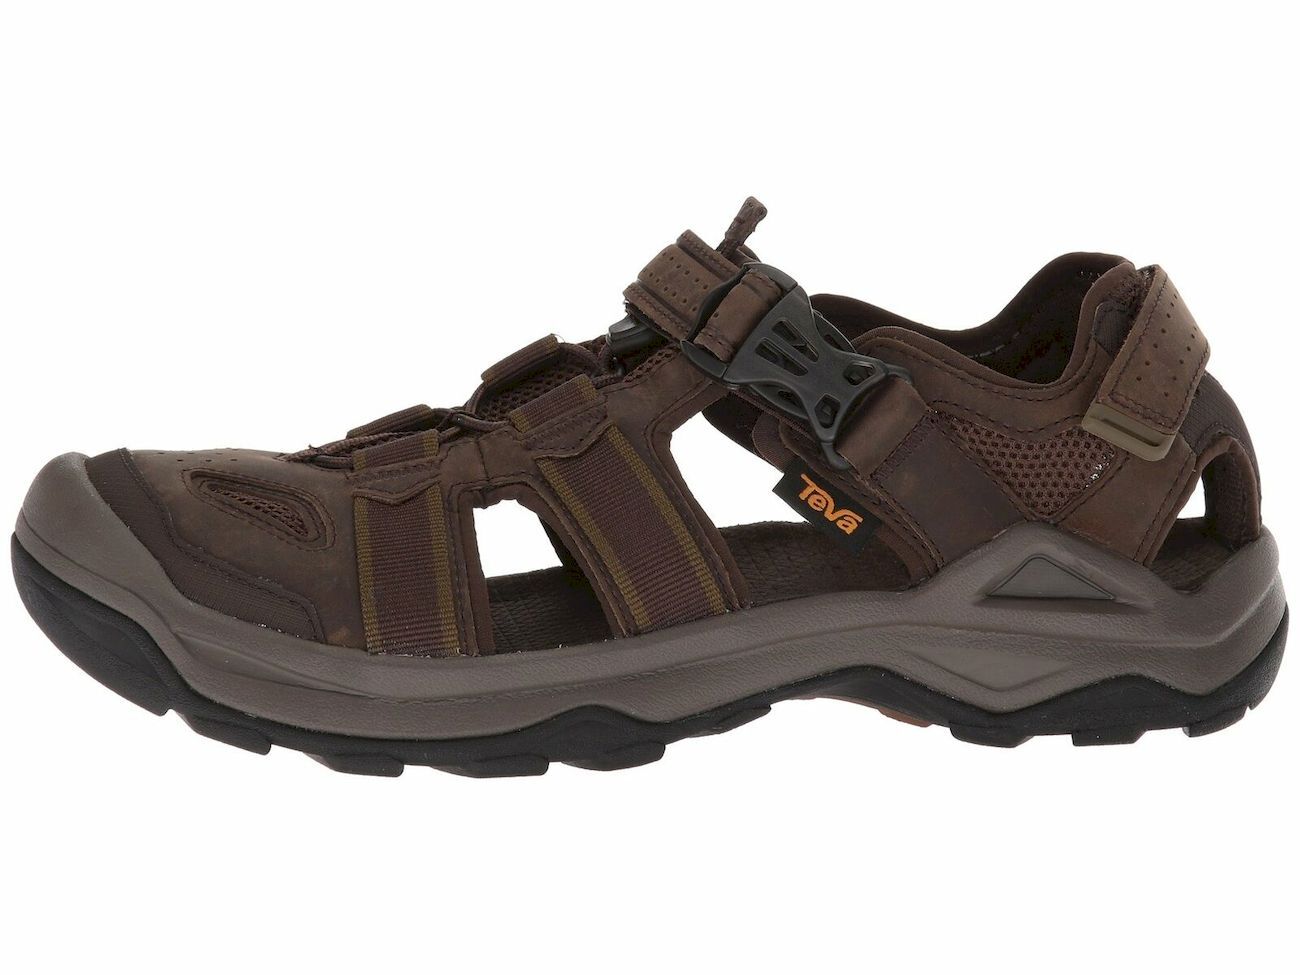 Teva Omnius 2 Leather - Walking sandals - Men's